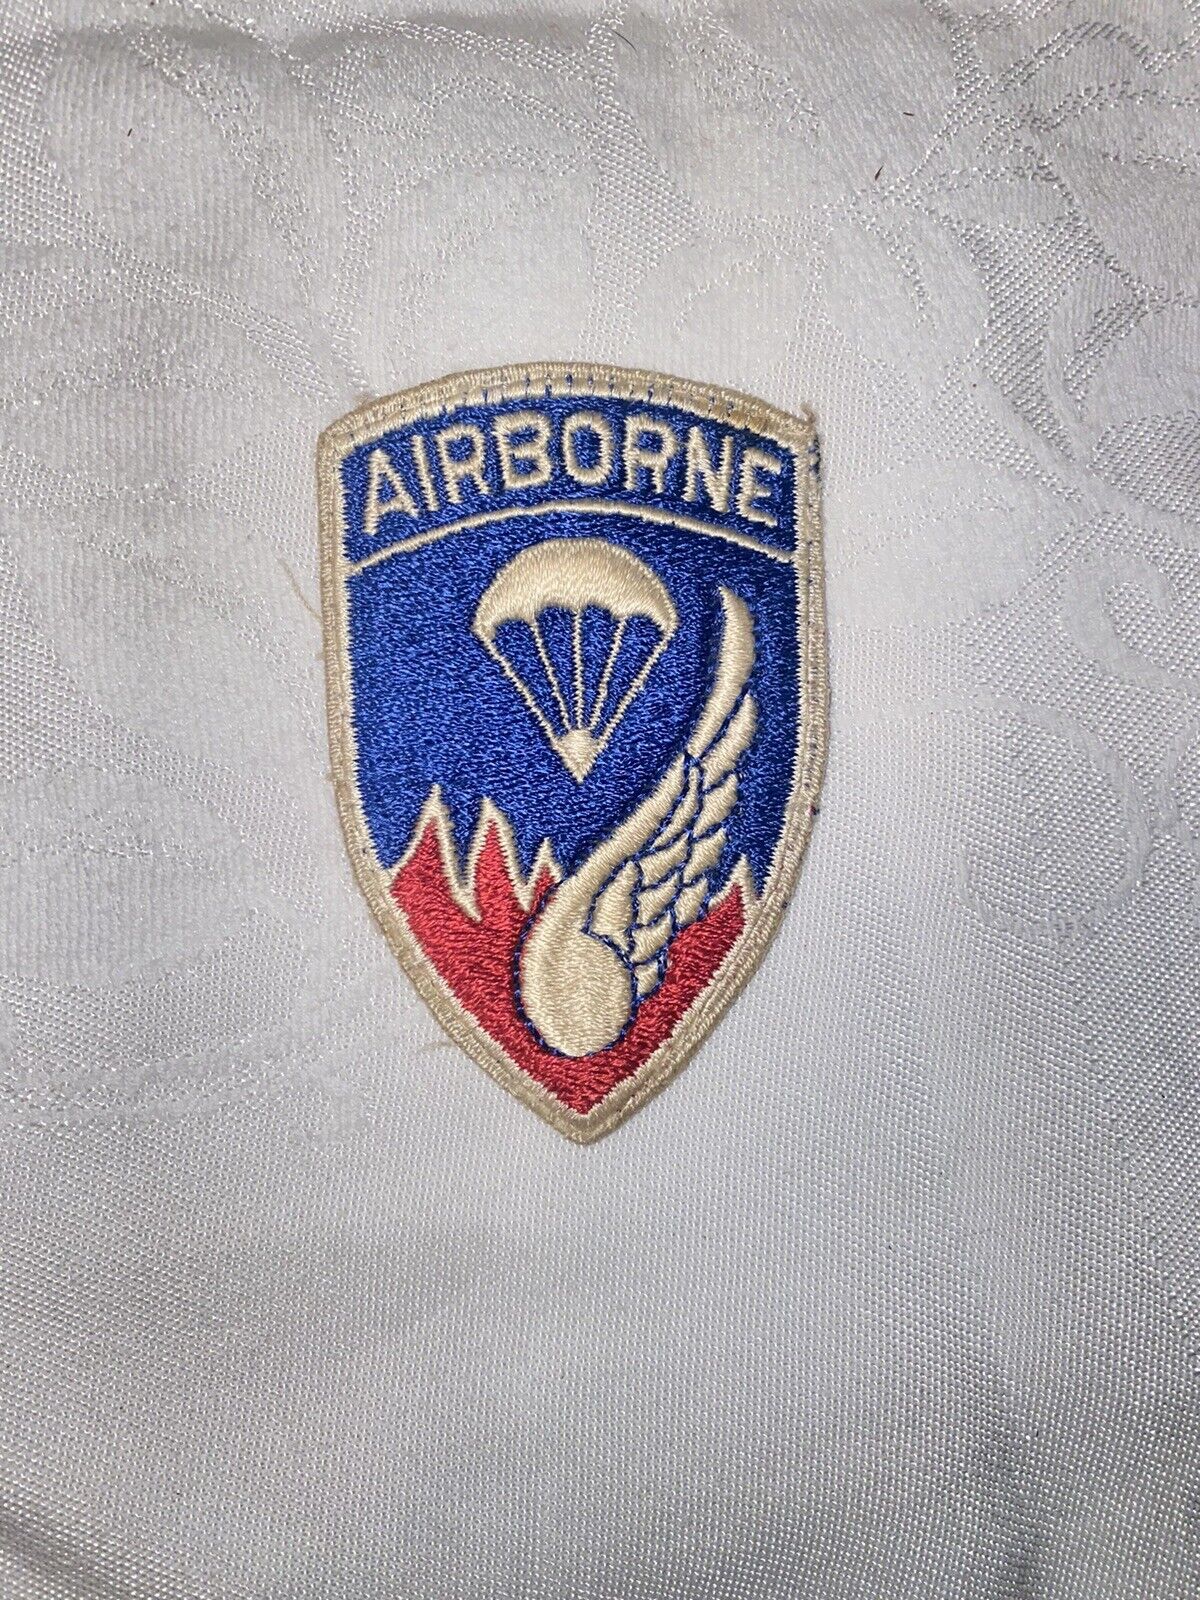 Original Korean War 187th Airborne Regiment RCT Insignia Patch 